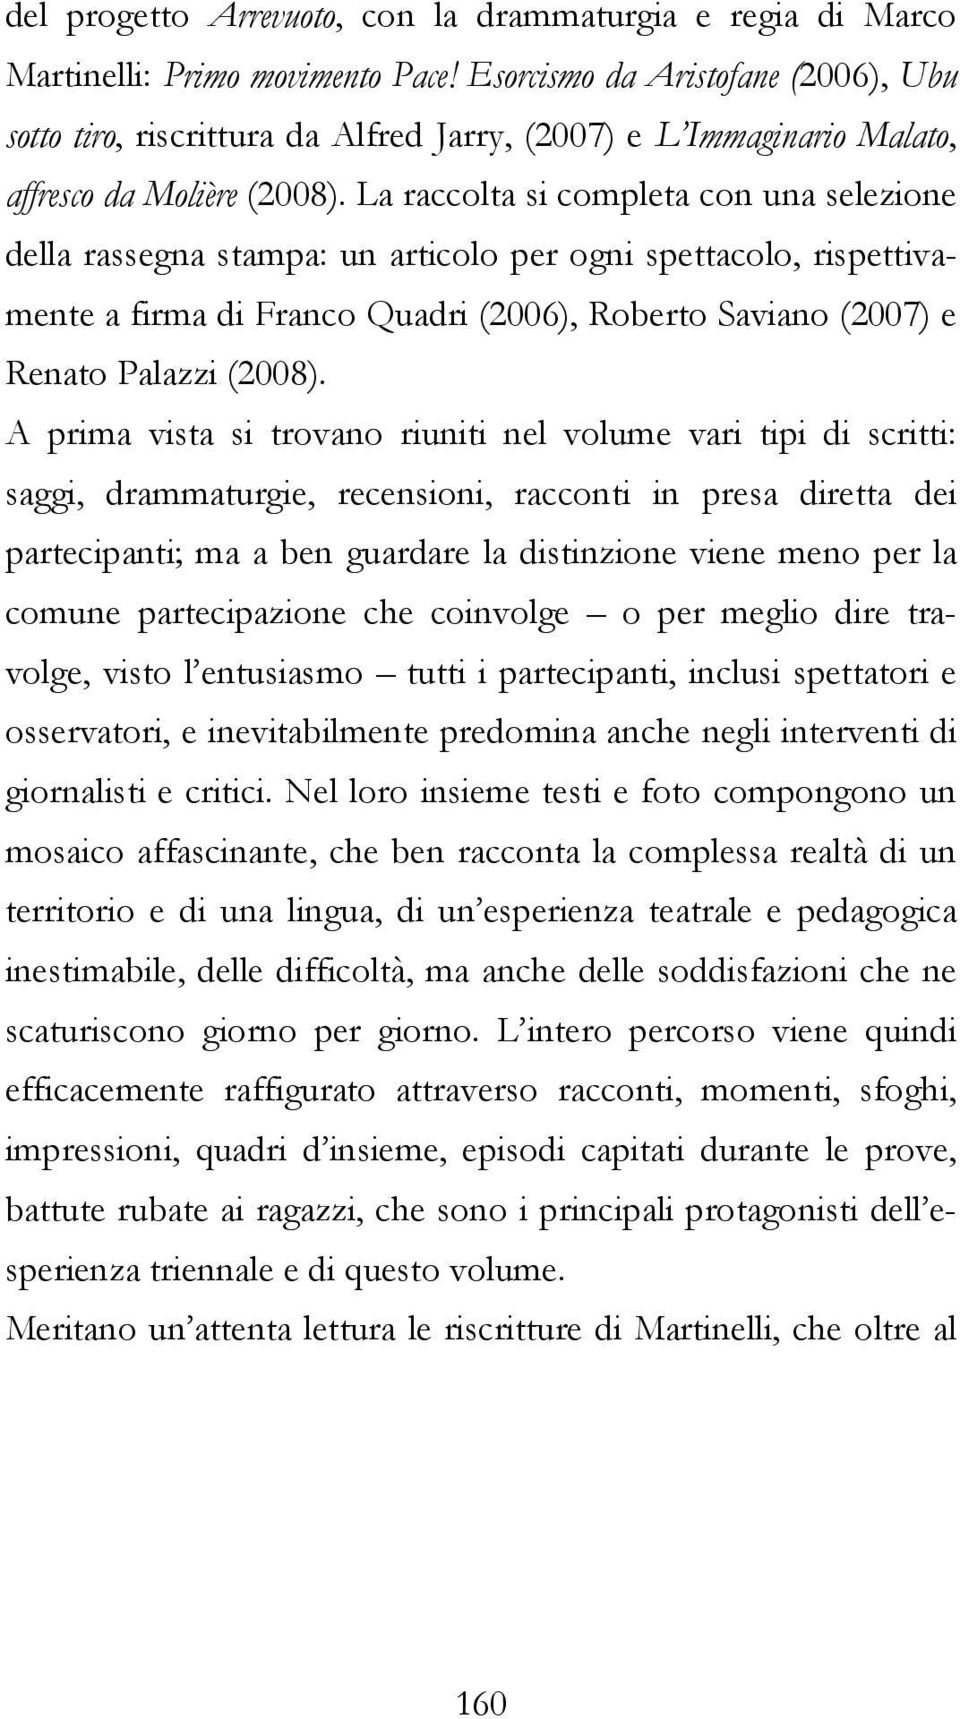 La raccolta si completa con una selezione della rassegna stampa: un articolo per ogni spettacolo, rispettivamente a firma di Franco Quadri (2006), Roberto Saviano (2007) e Renato Palazzi (2008).